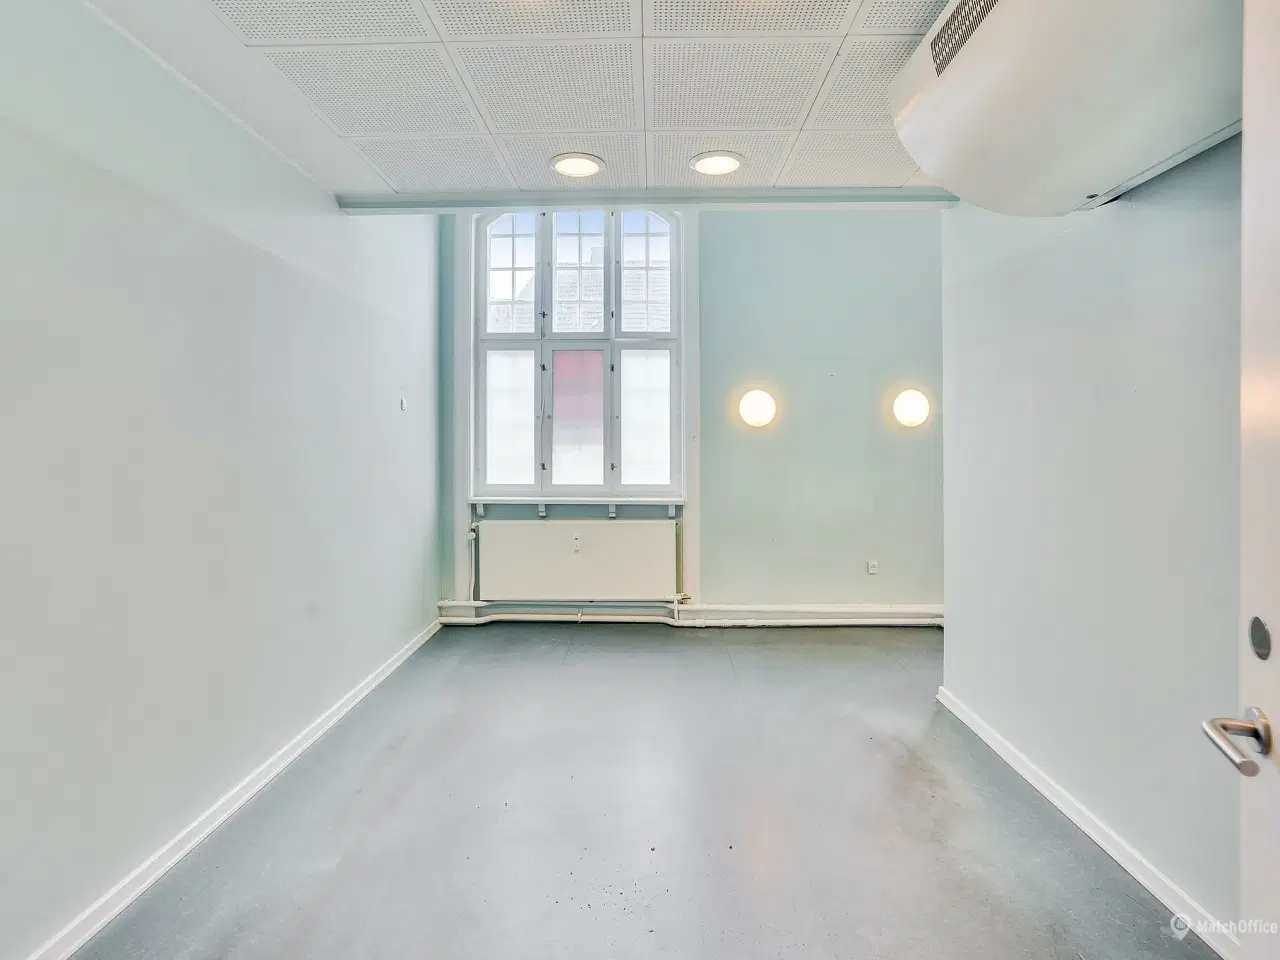 Billede 5 - Spændende kontorlokaler ved Indkøbscentret BROEN, i Esbjerg.